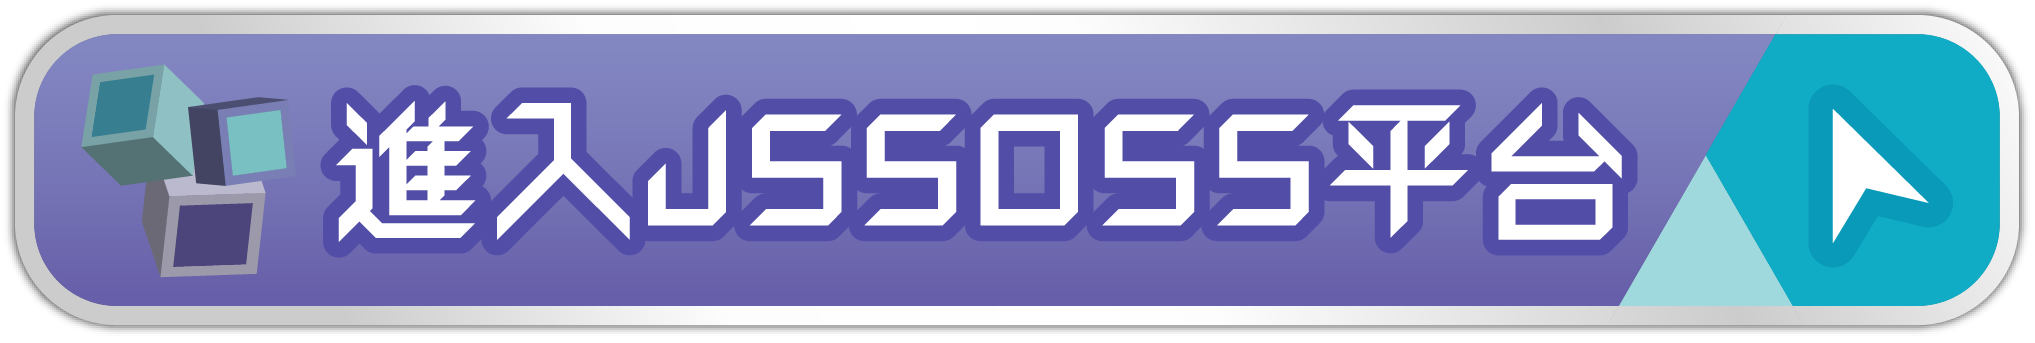 進入JSSOSS平台